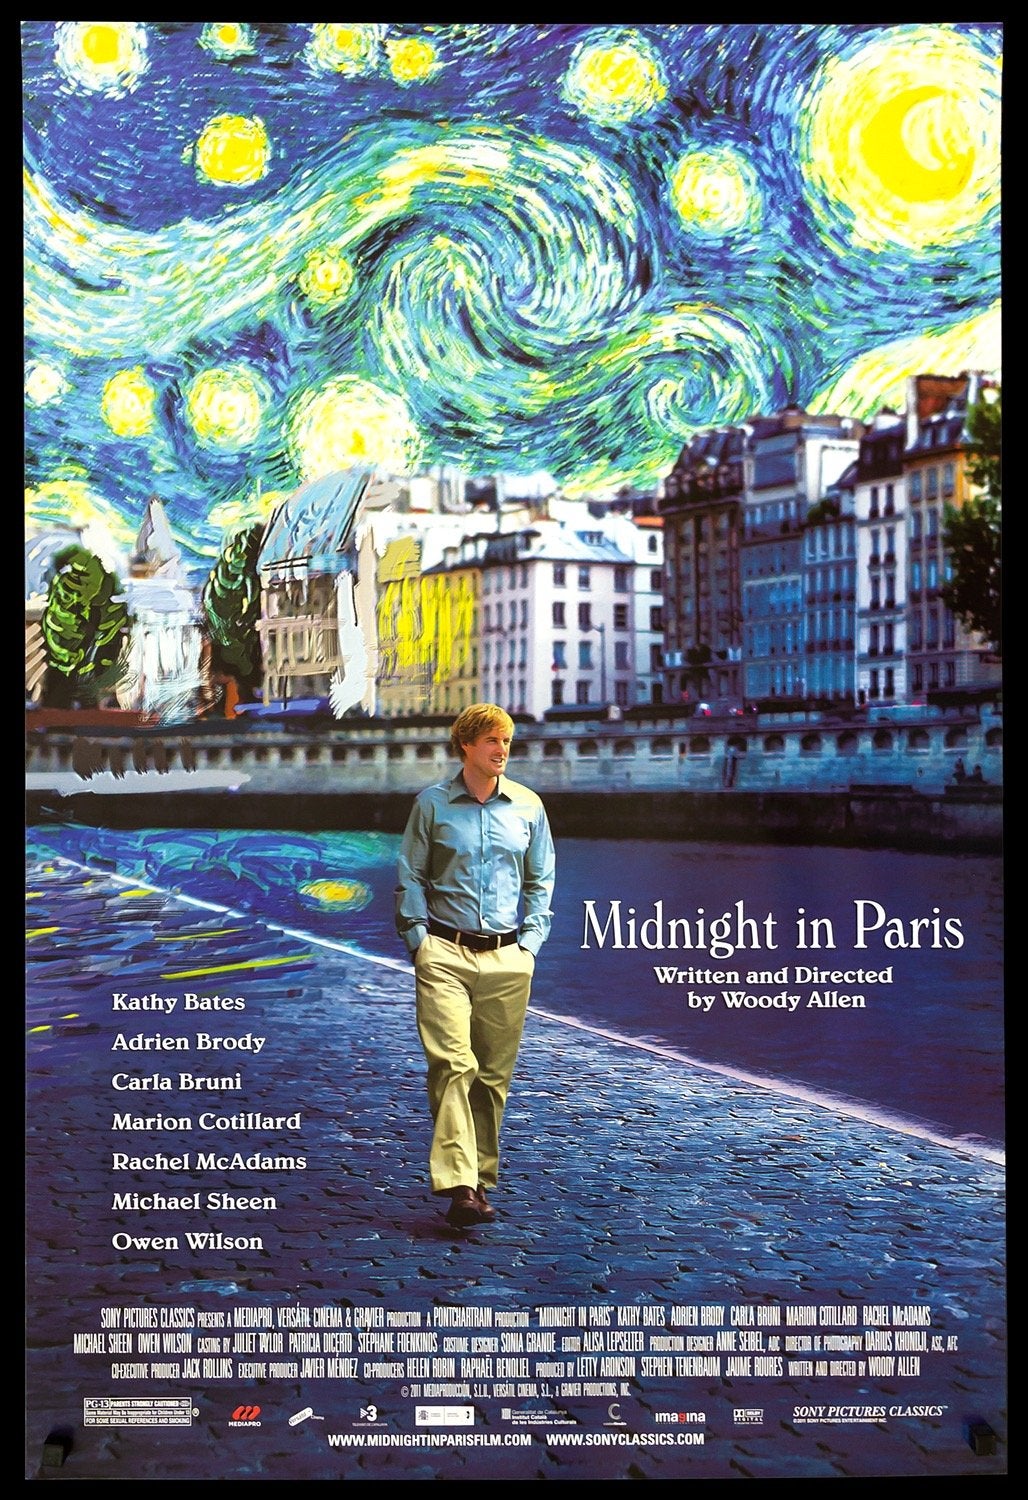 Midnight in Paris (2011) original movie poster for sale at Original Film Art